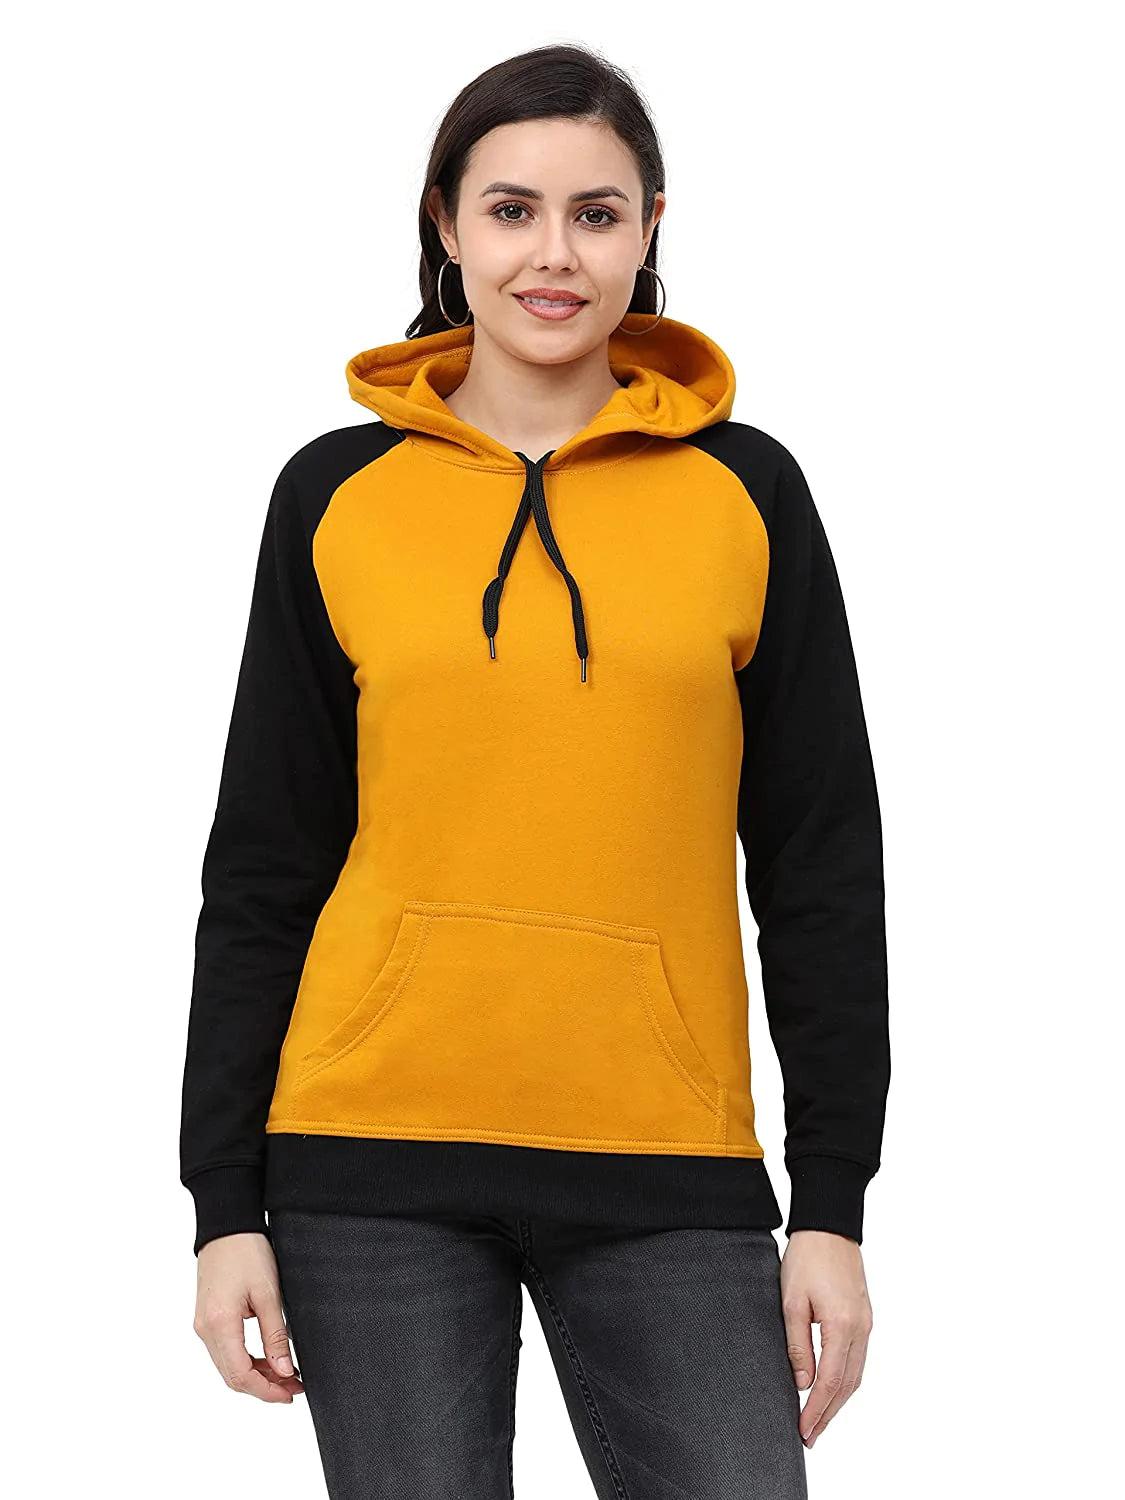 Women's Cotton Color Block Raglan Full Sleeve Sweatshirt/Hoodies